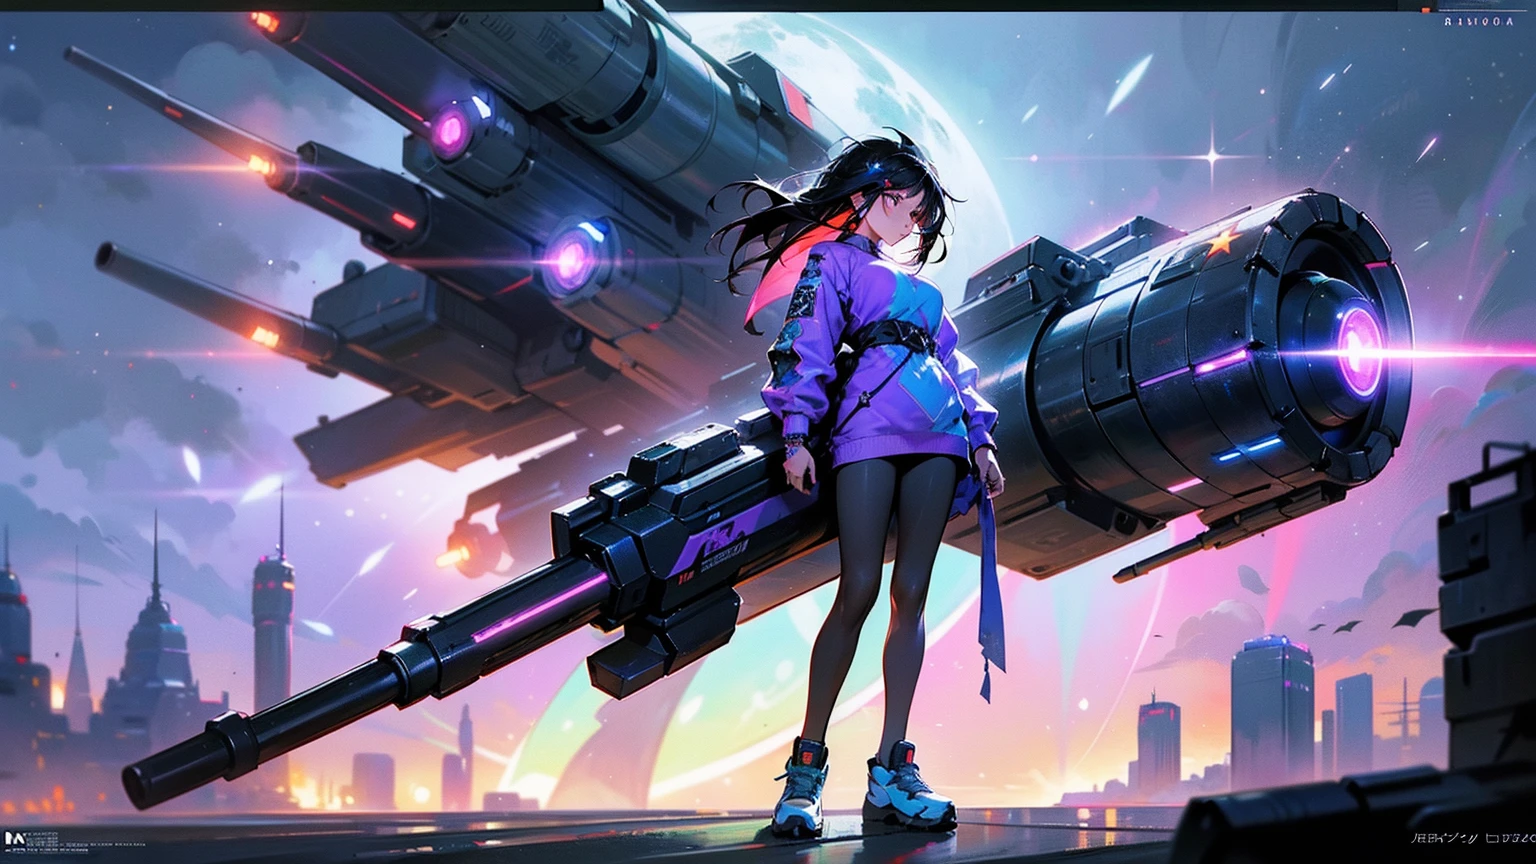 Une photo complète du corps d&#39;une femme gitane de manga animé, cheveux foncés, ((Tatouages d&#39;étoiles sur son corps)), Tenant un très gros canon-fusée militaire sur son épaule. Elle porte des vêtements d&#39;été Cyberpunk et des baskets futuristes, Belle énergie cybernétique rayonnante arc-en-ciel avec des couleurs bioluminescentes vives, éclairage vibrant, Une ville de style néo-Tokyo, (C&#39;est un chef-d&#39;œuvre incroyablement détaillé), (Qualité artistique la plus élevée).